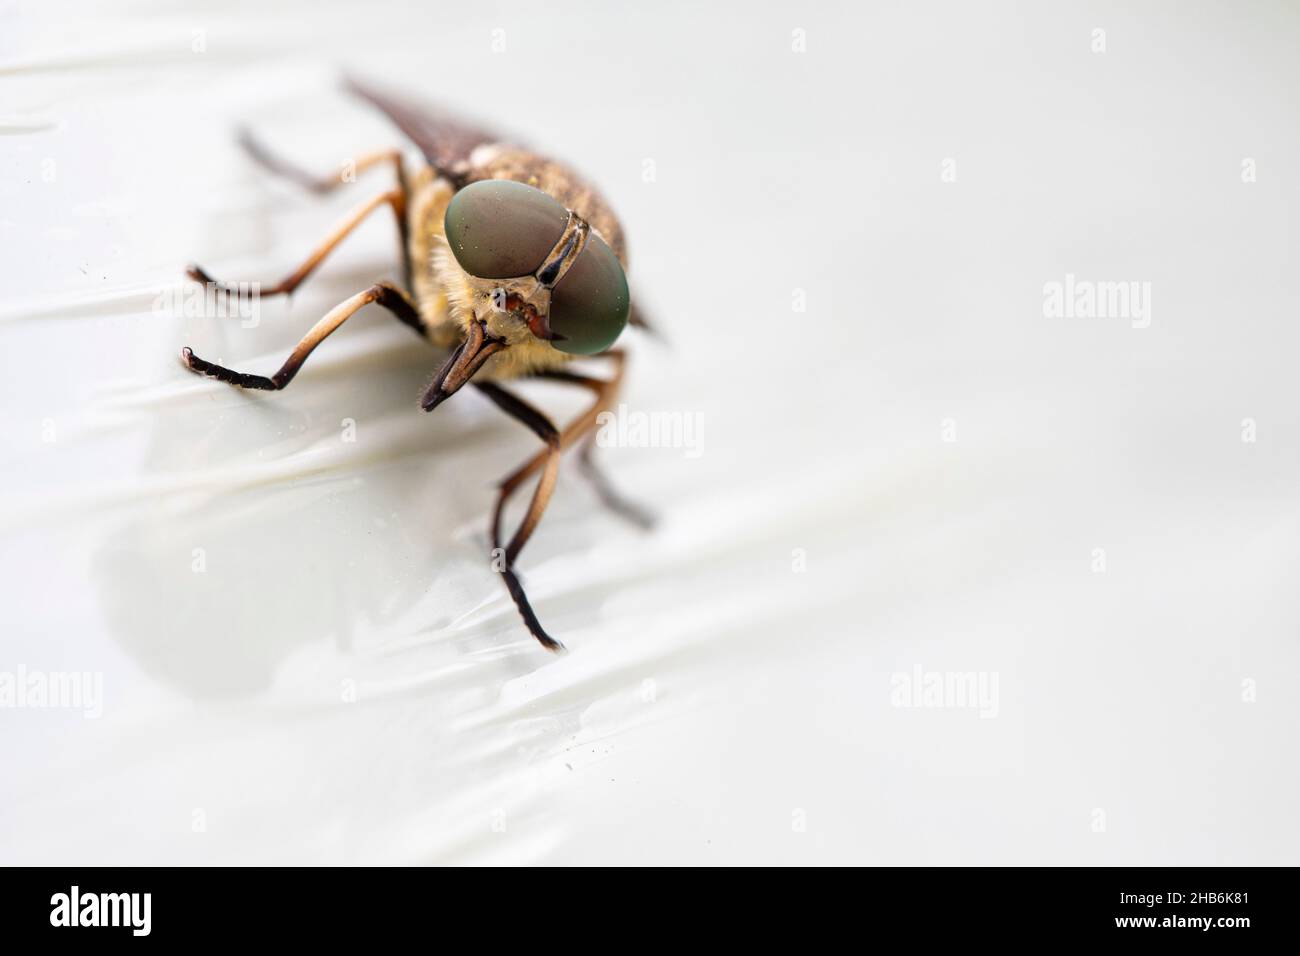 horsefly (Tabanus sudeticus), close-up, Austria Stock Photo